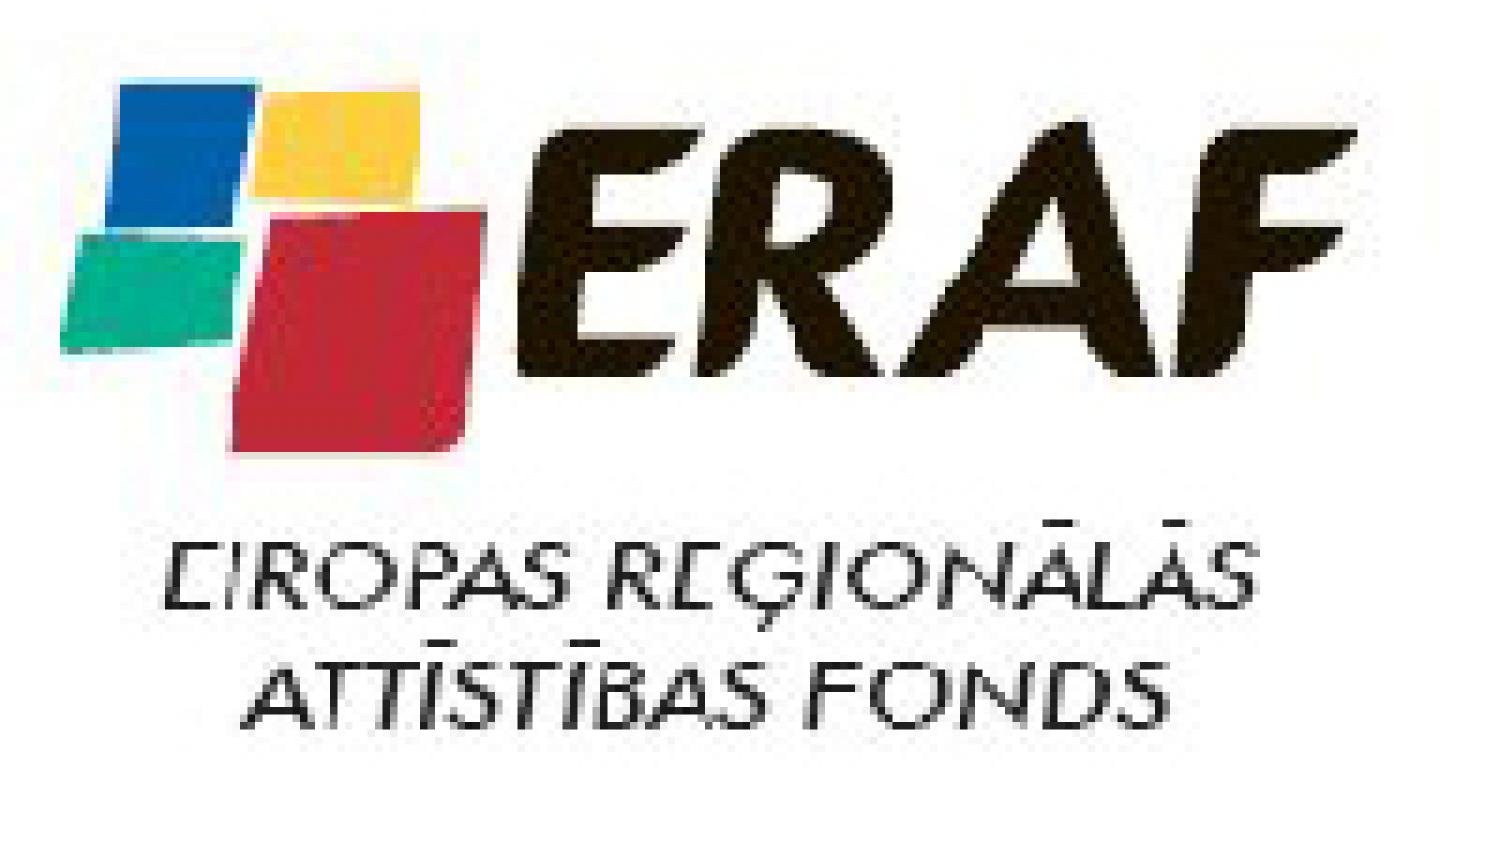 ERAF logo